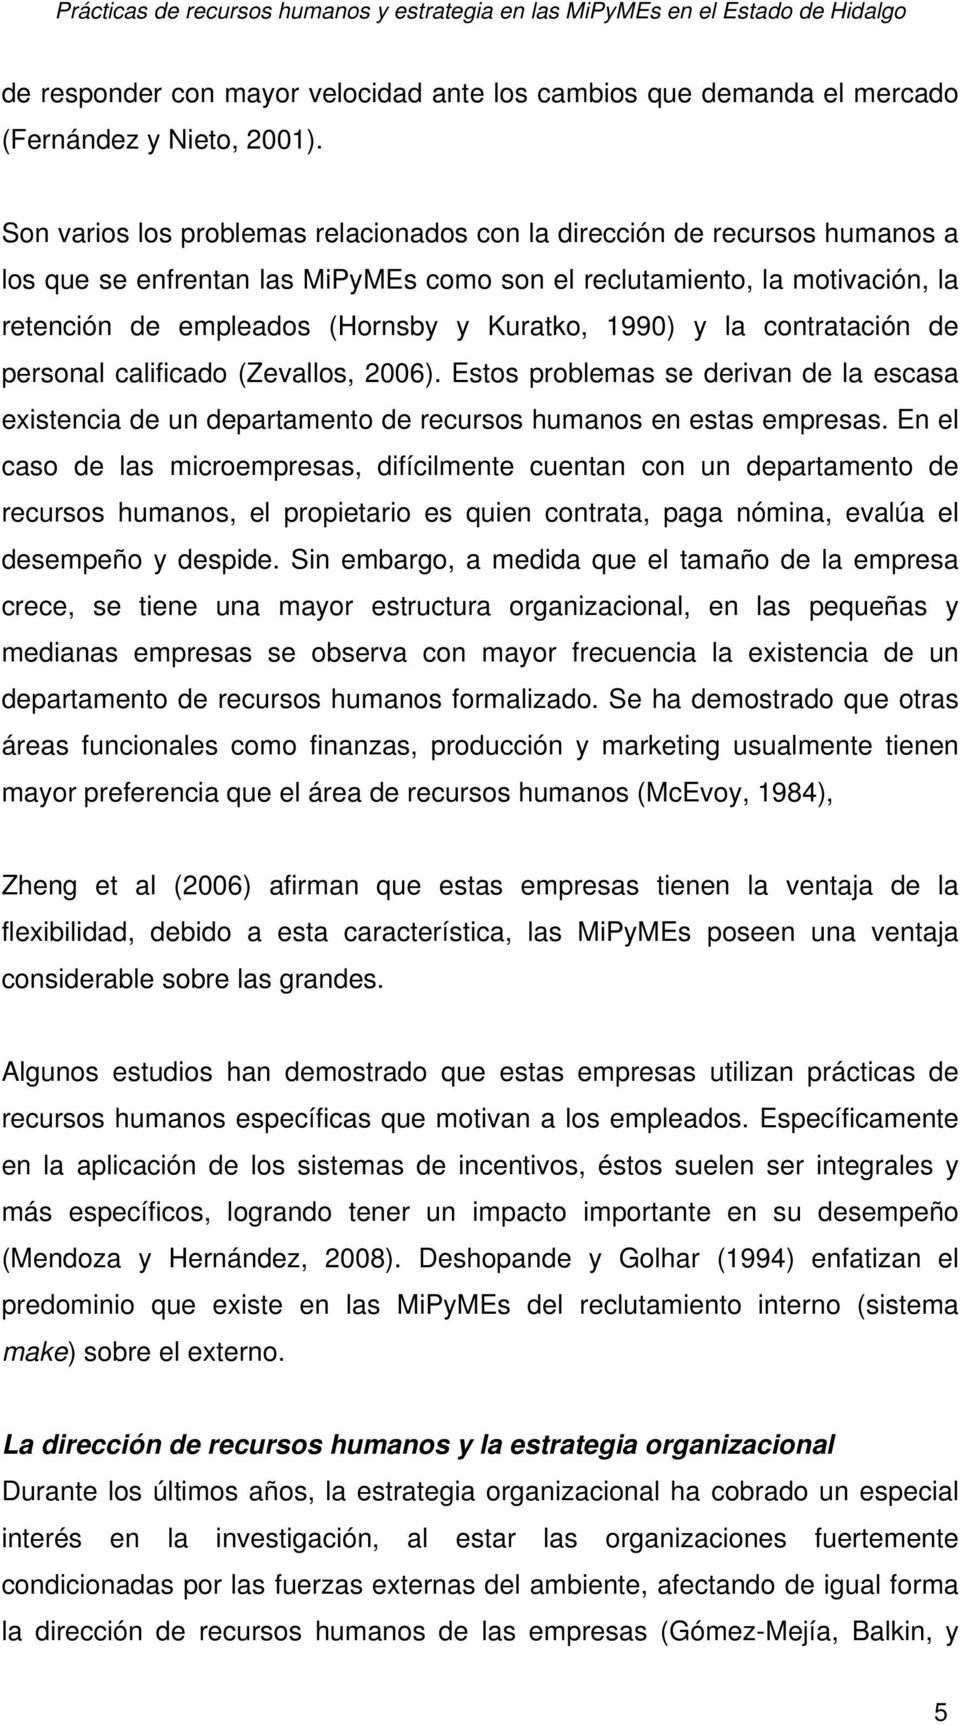 1990) y la contratación de personal calificado (Zevallos, 2006). Estos problemas se derivan de la escasa existencia de un departamento de recursos humanos en estas empresas.